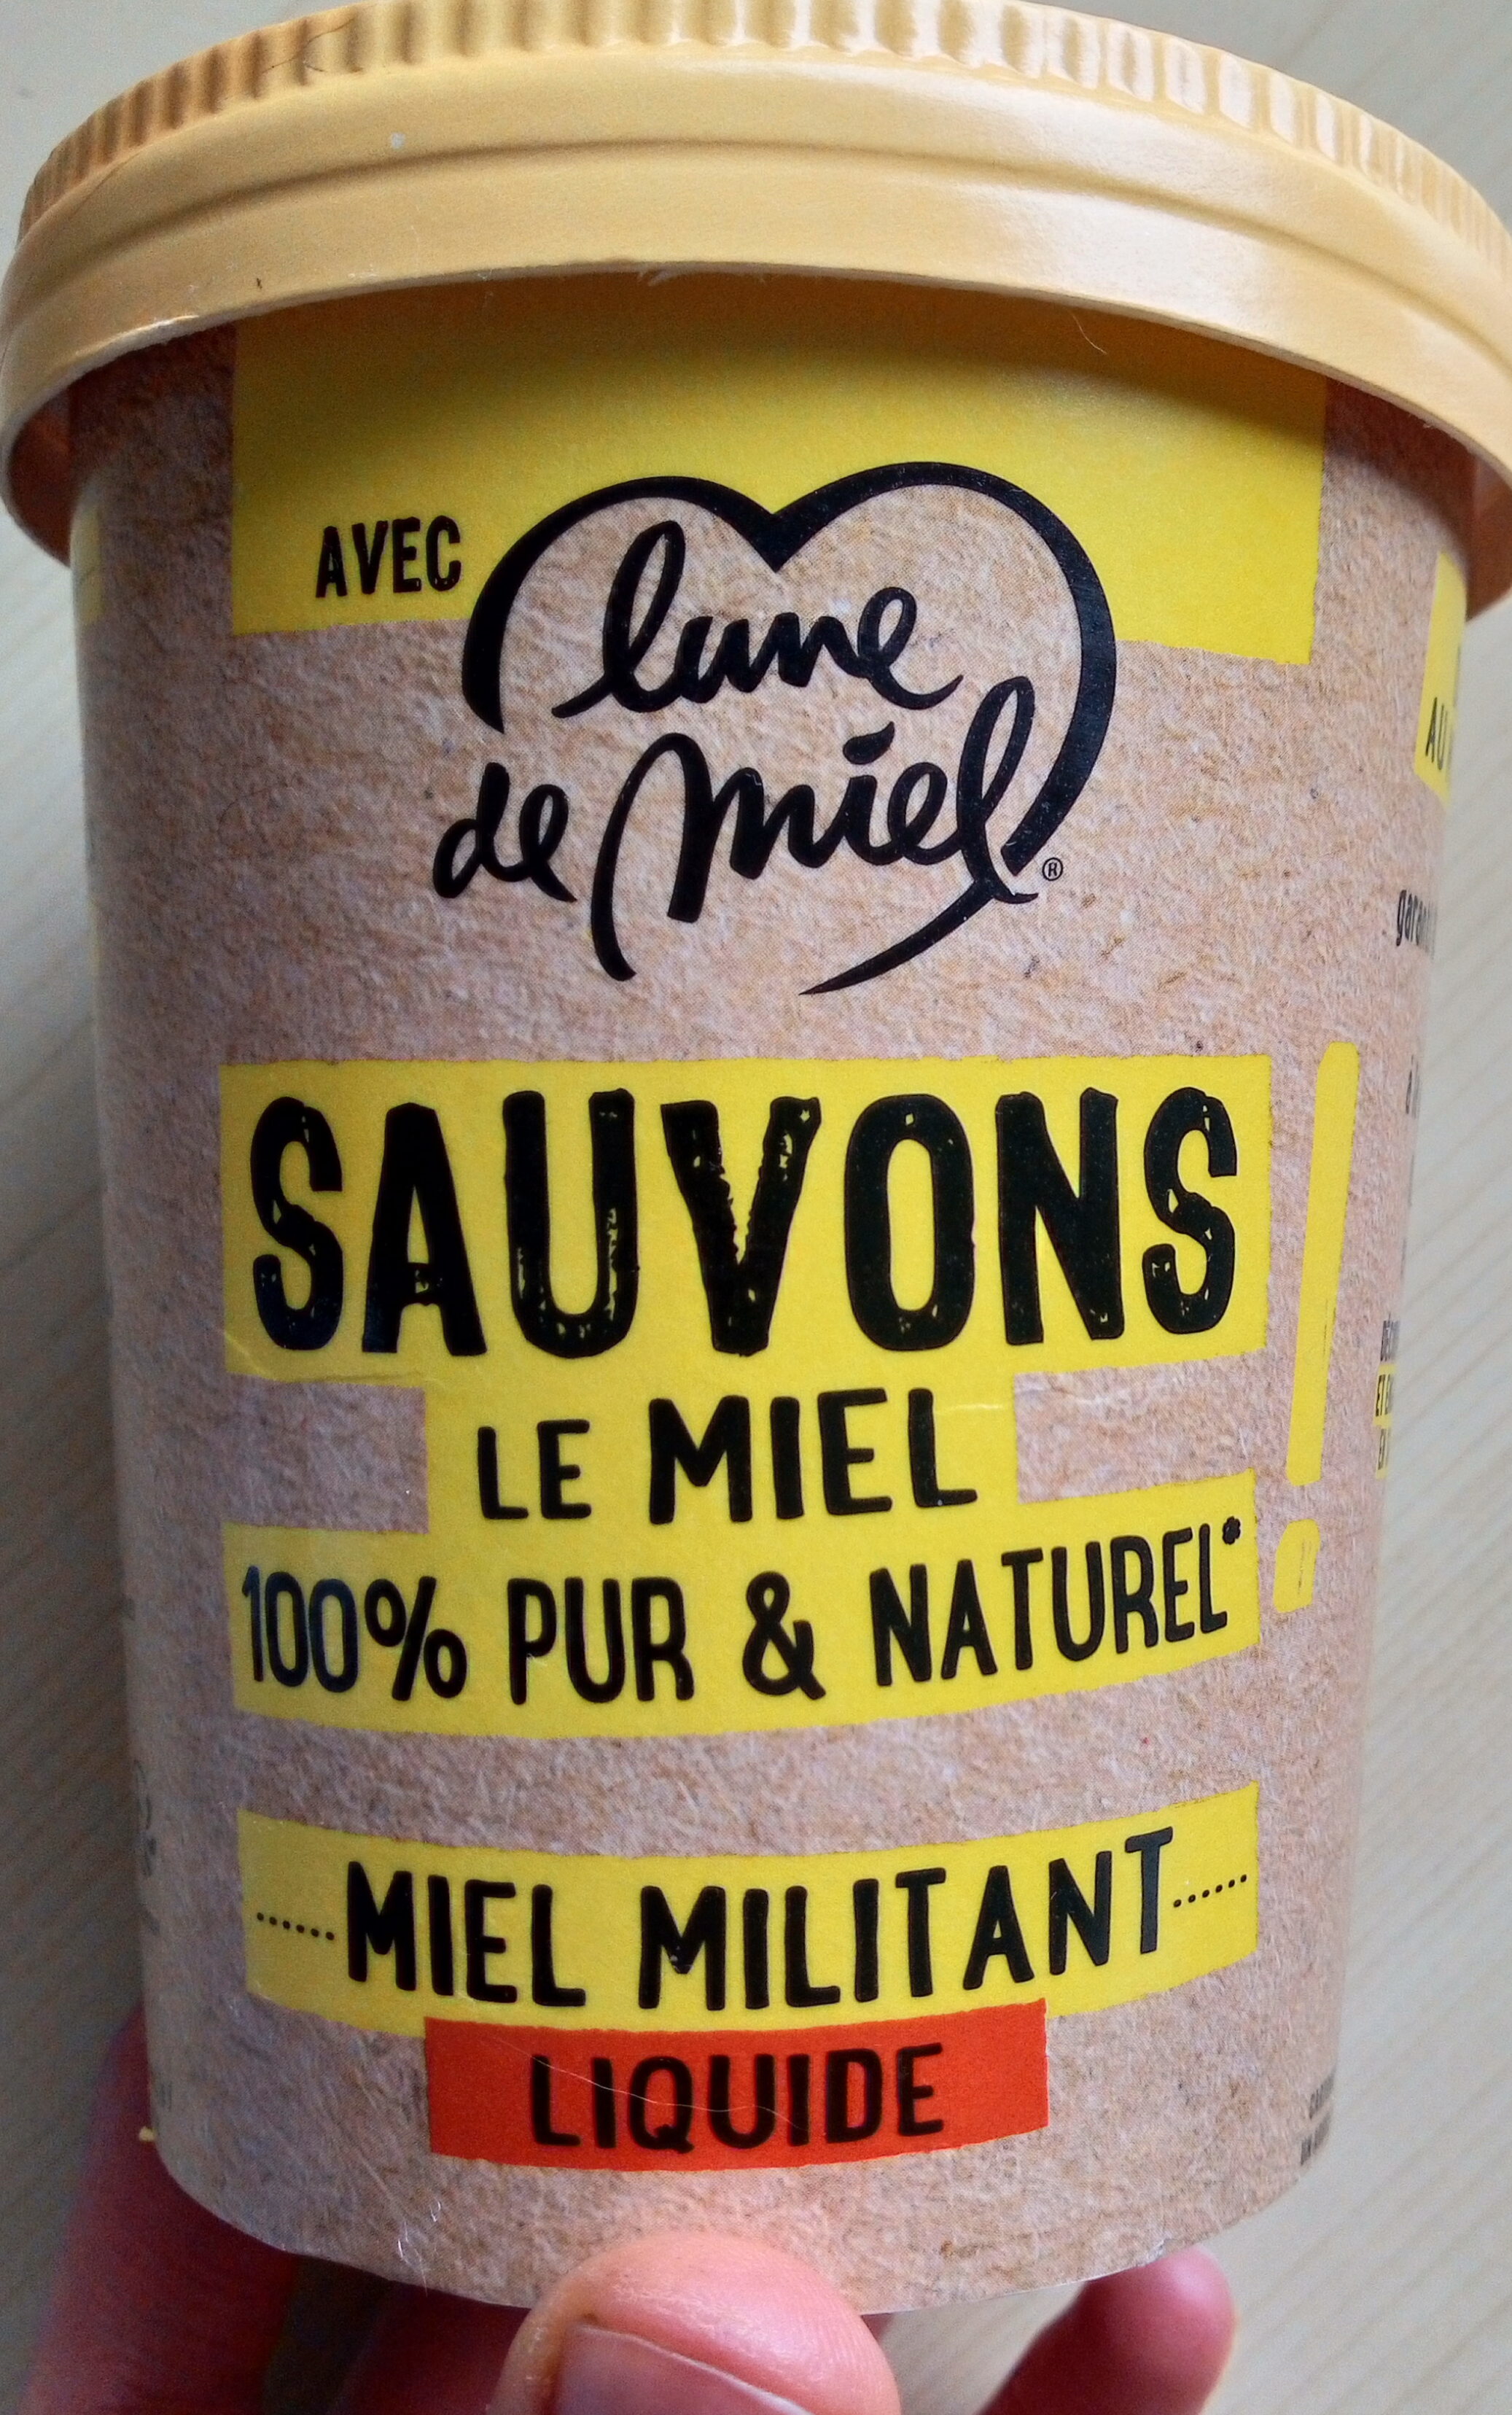 Miel militant liquide - Product - fr